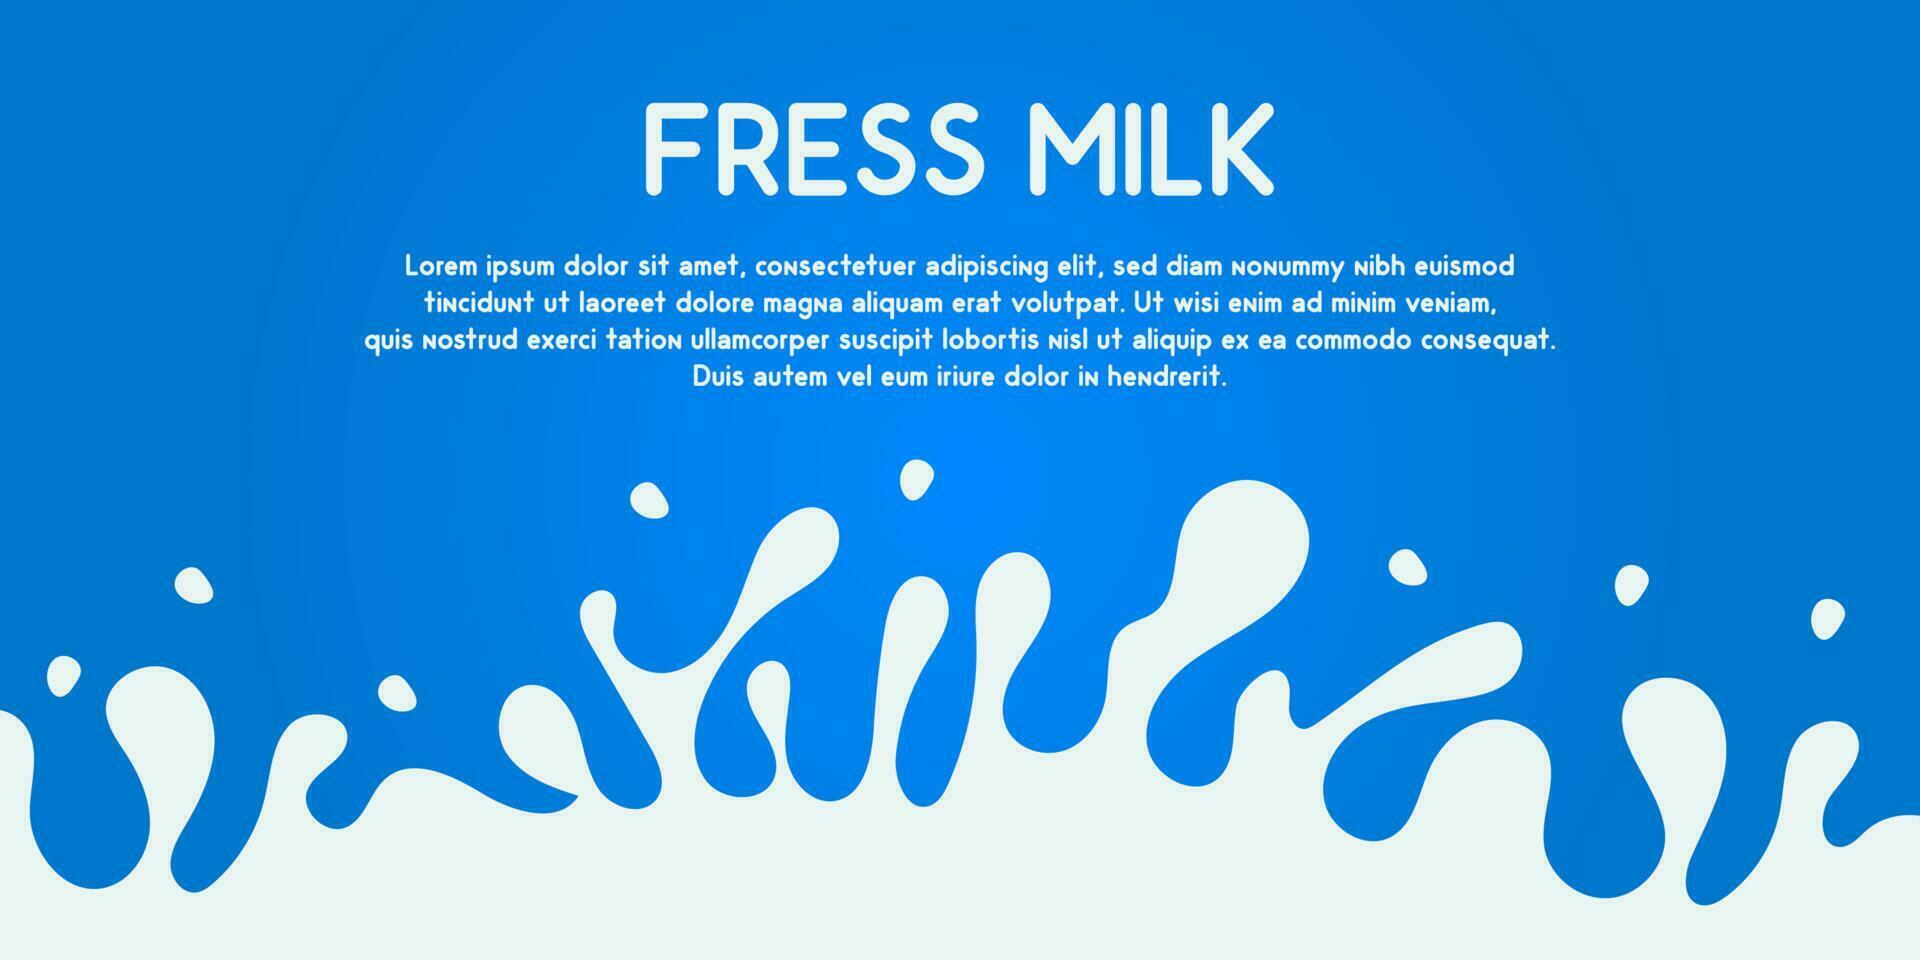 värld mjölk dag. färsk mjölk begrepp baner kort full flaska och glas på en blå bakgrund. vektor illustration